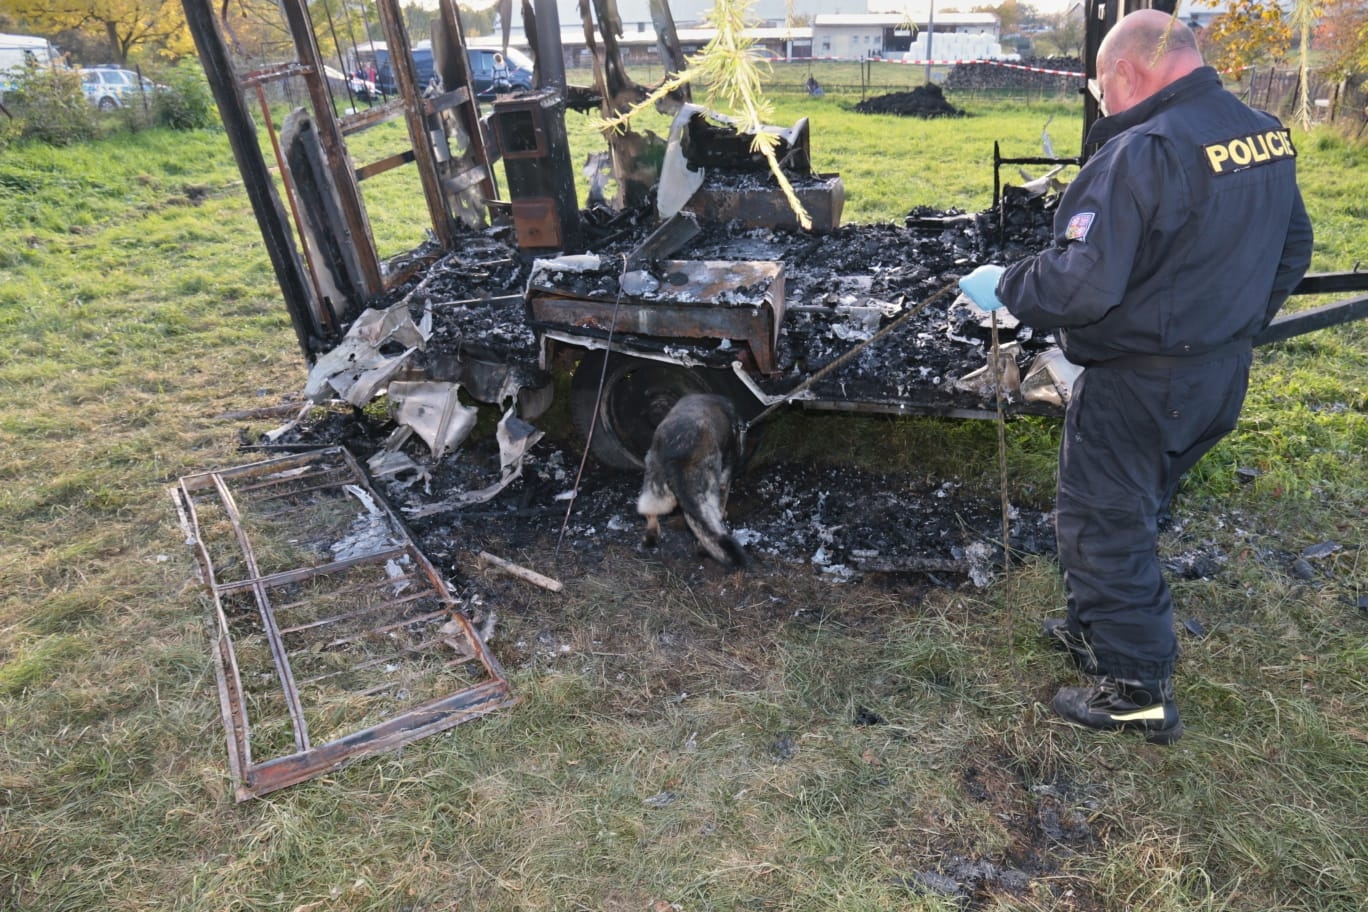 Jesenicko - psovod se psem vycvičeným na vyhledávání ohnisek požáru zdroj foto: PČR